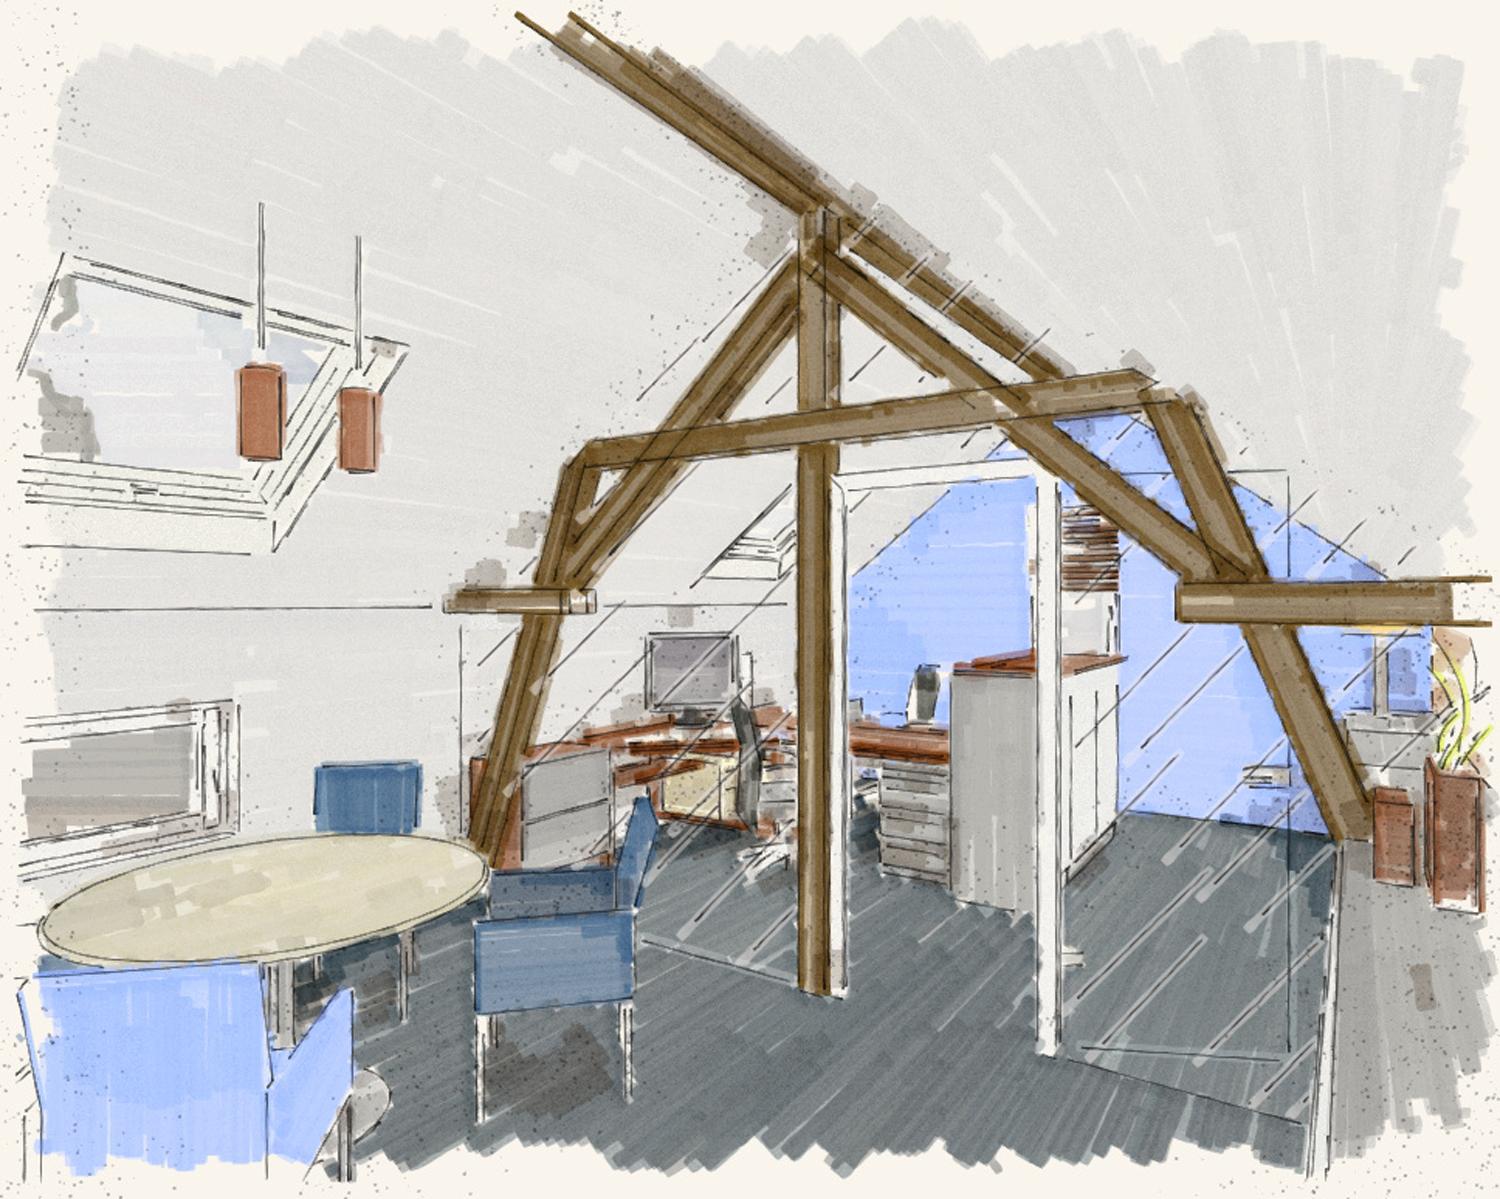 Konferenzbereich mit Büro #dachausbau #dachgeschoss #dachbalken #raumdesign #innenarchitektur ©Silja Zürner